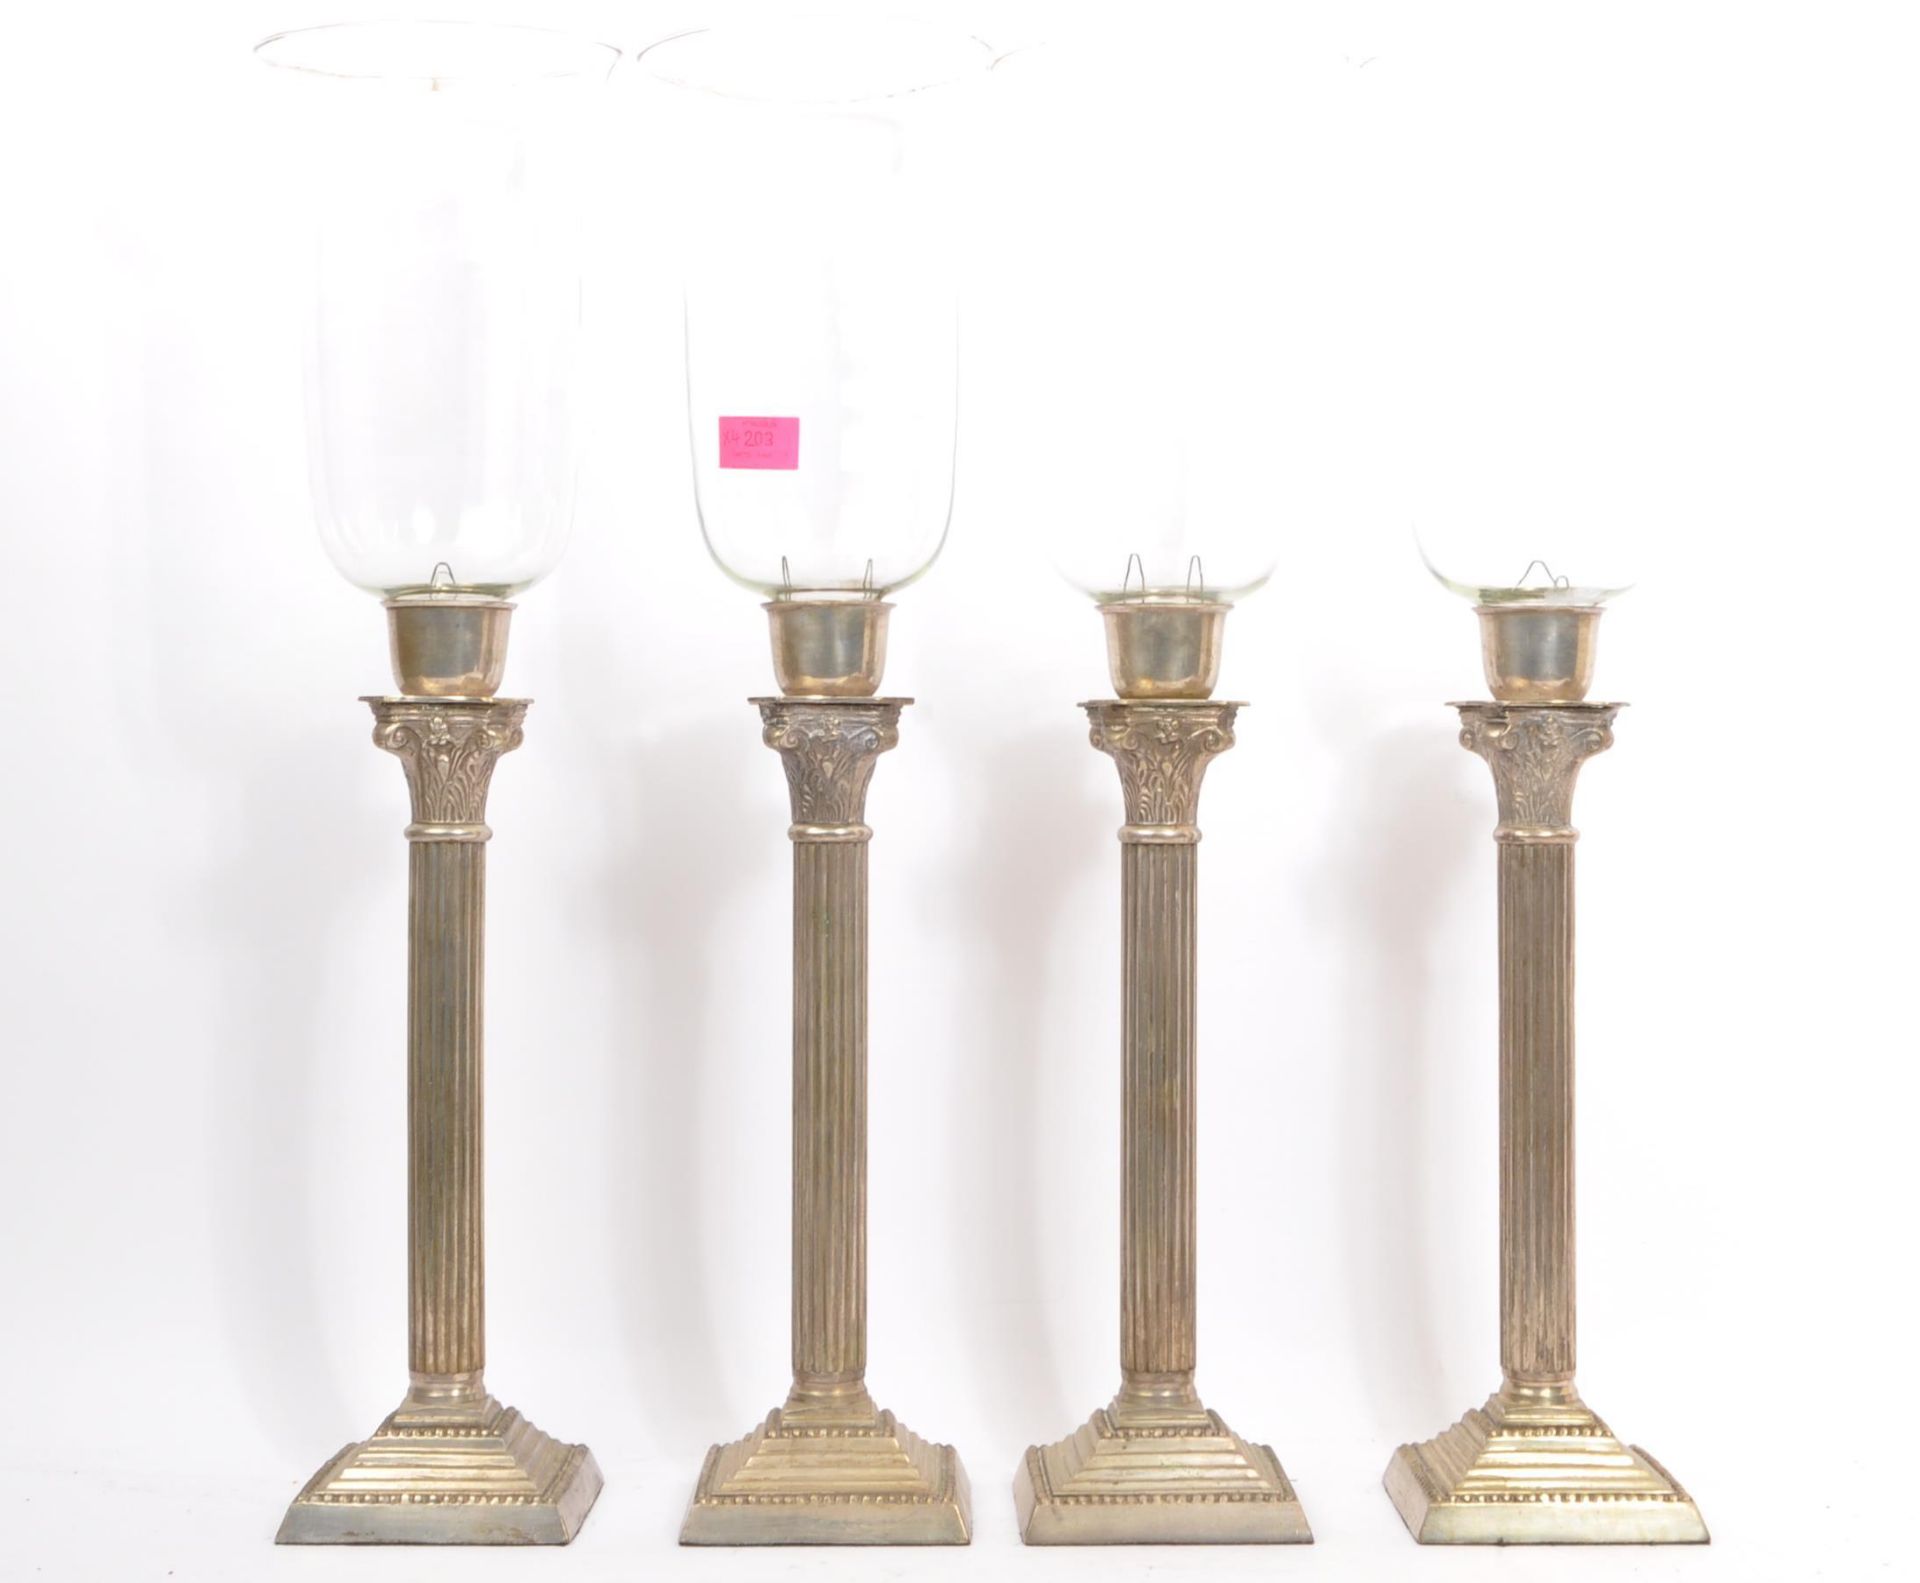 FOUR VICTORIAN COLUMN STORM LAMPS